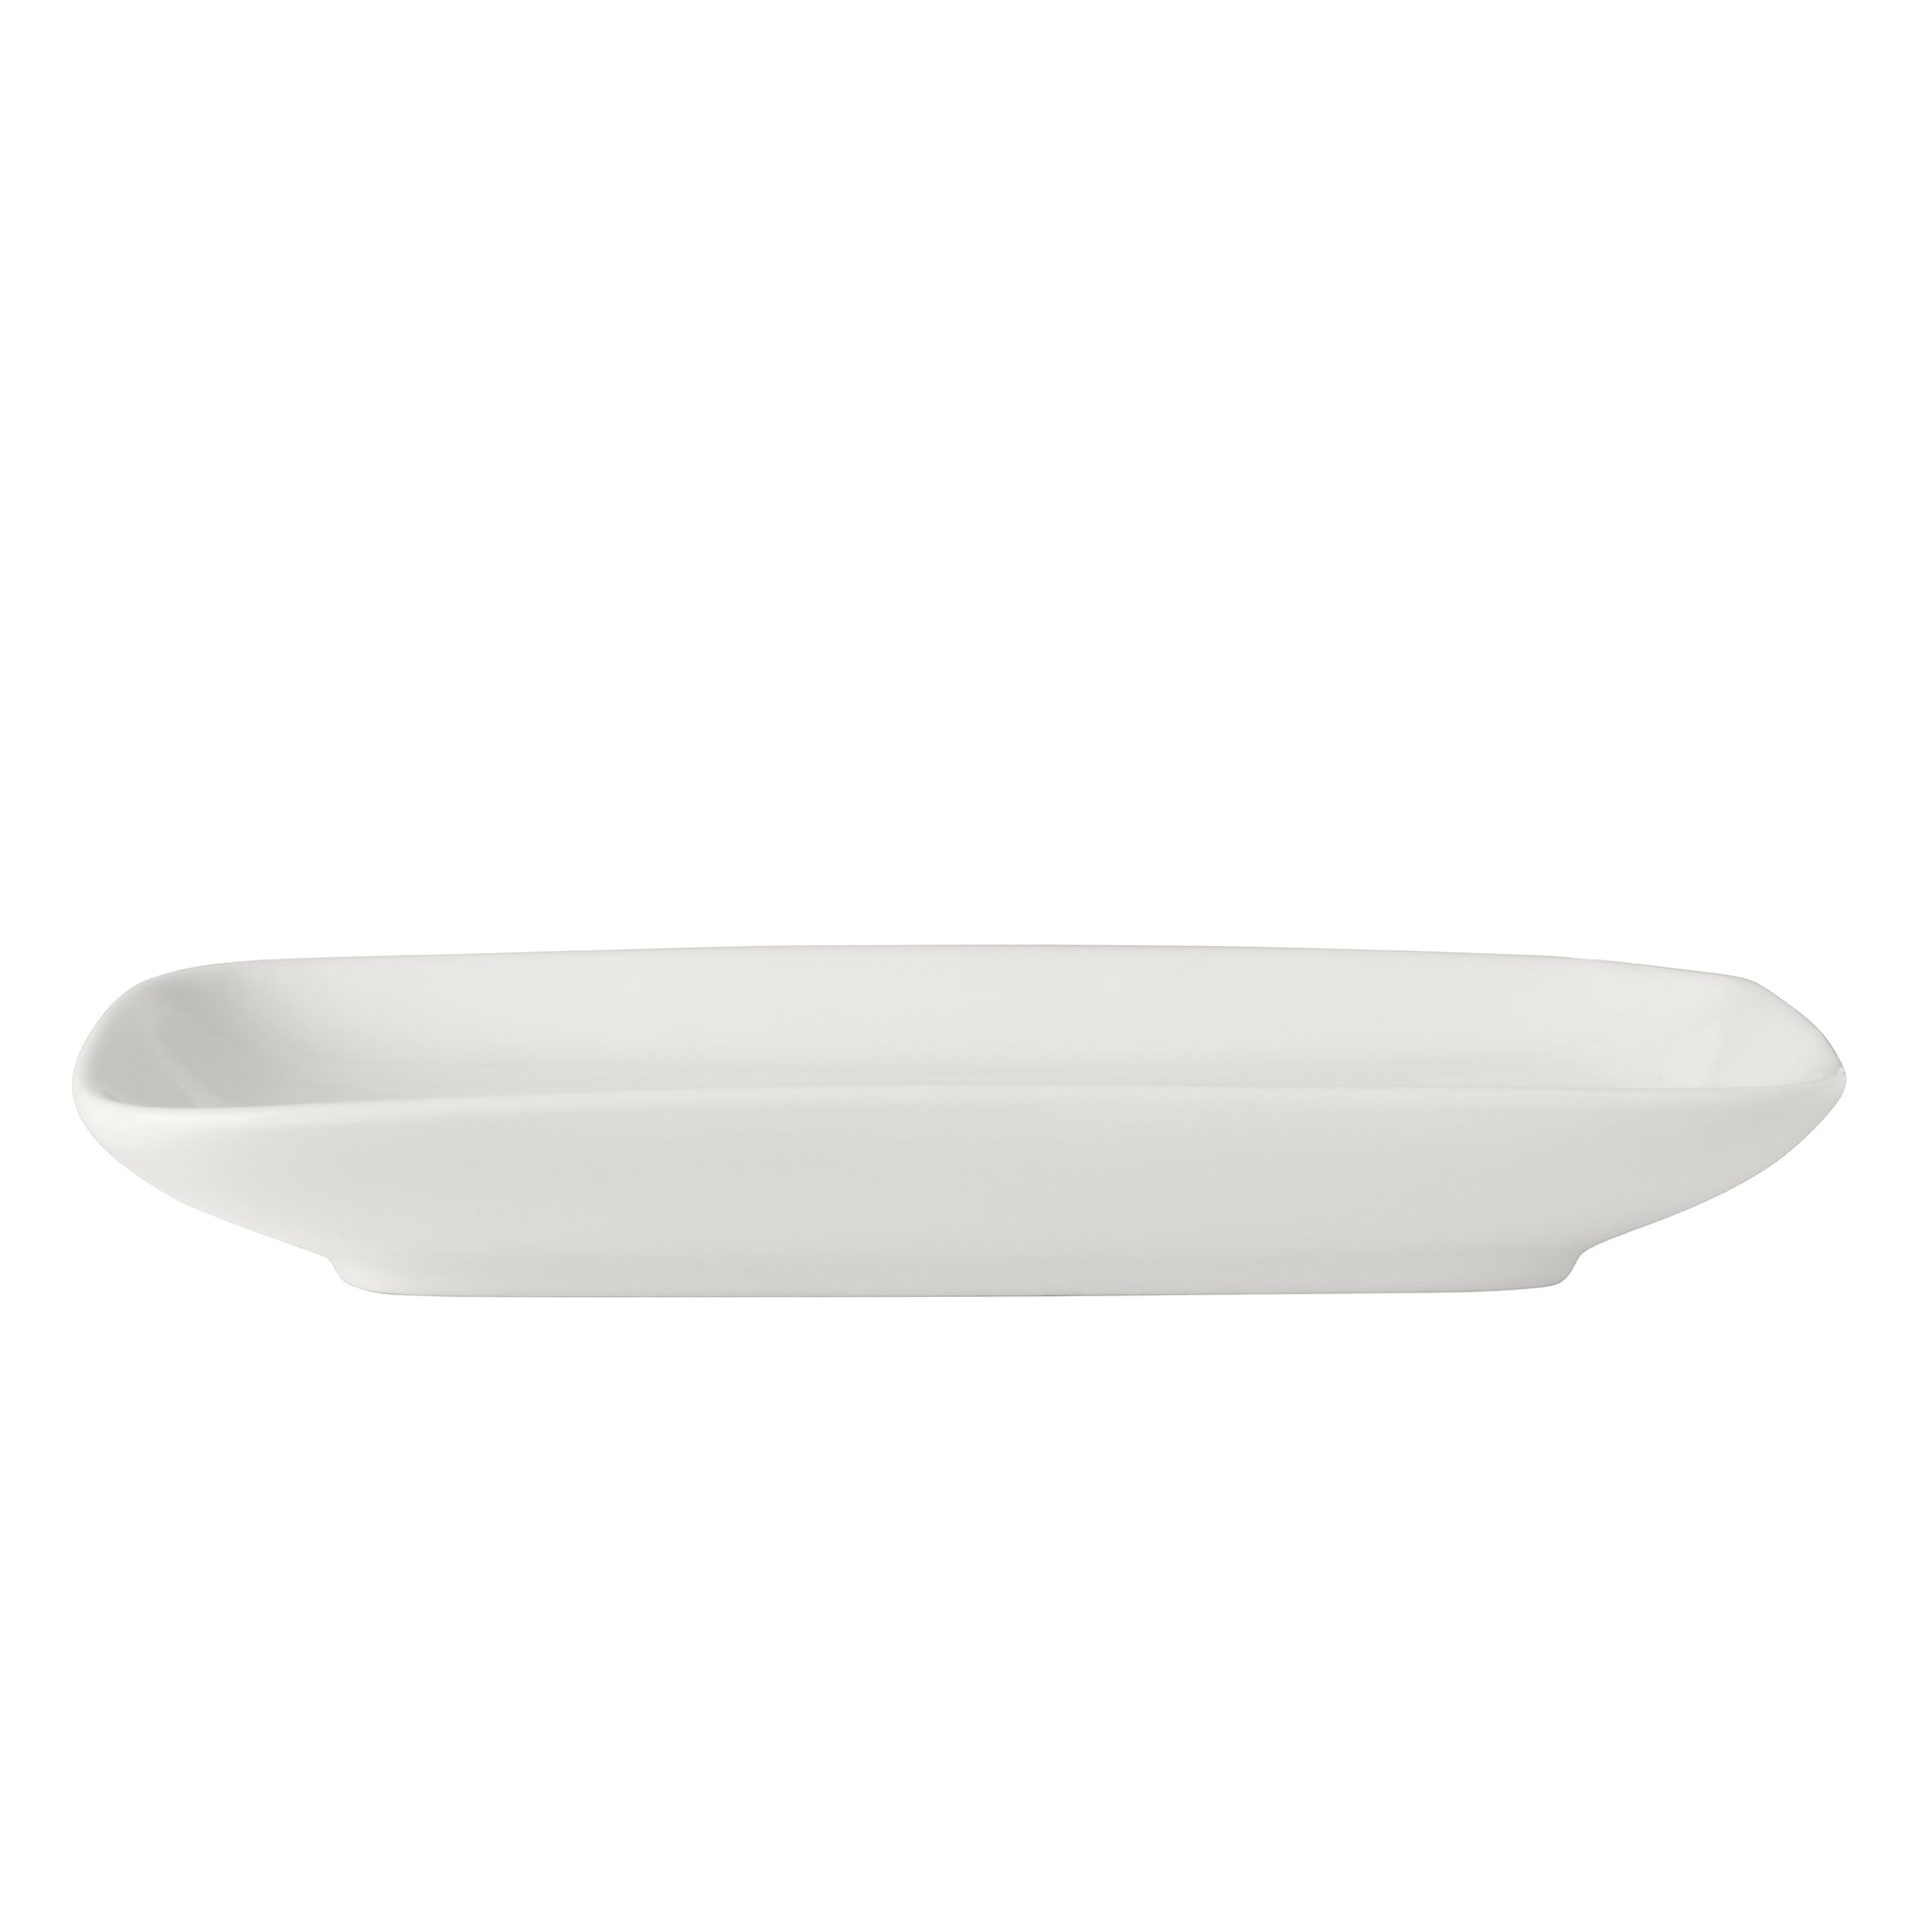 Bistro Porcelain Rectangular Platter 8x5" White